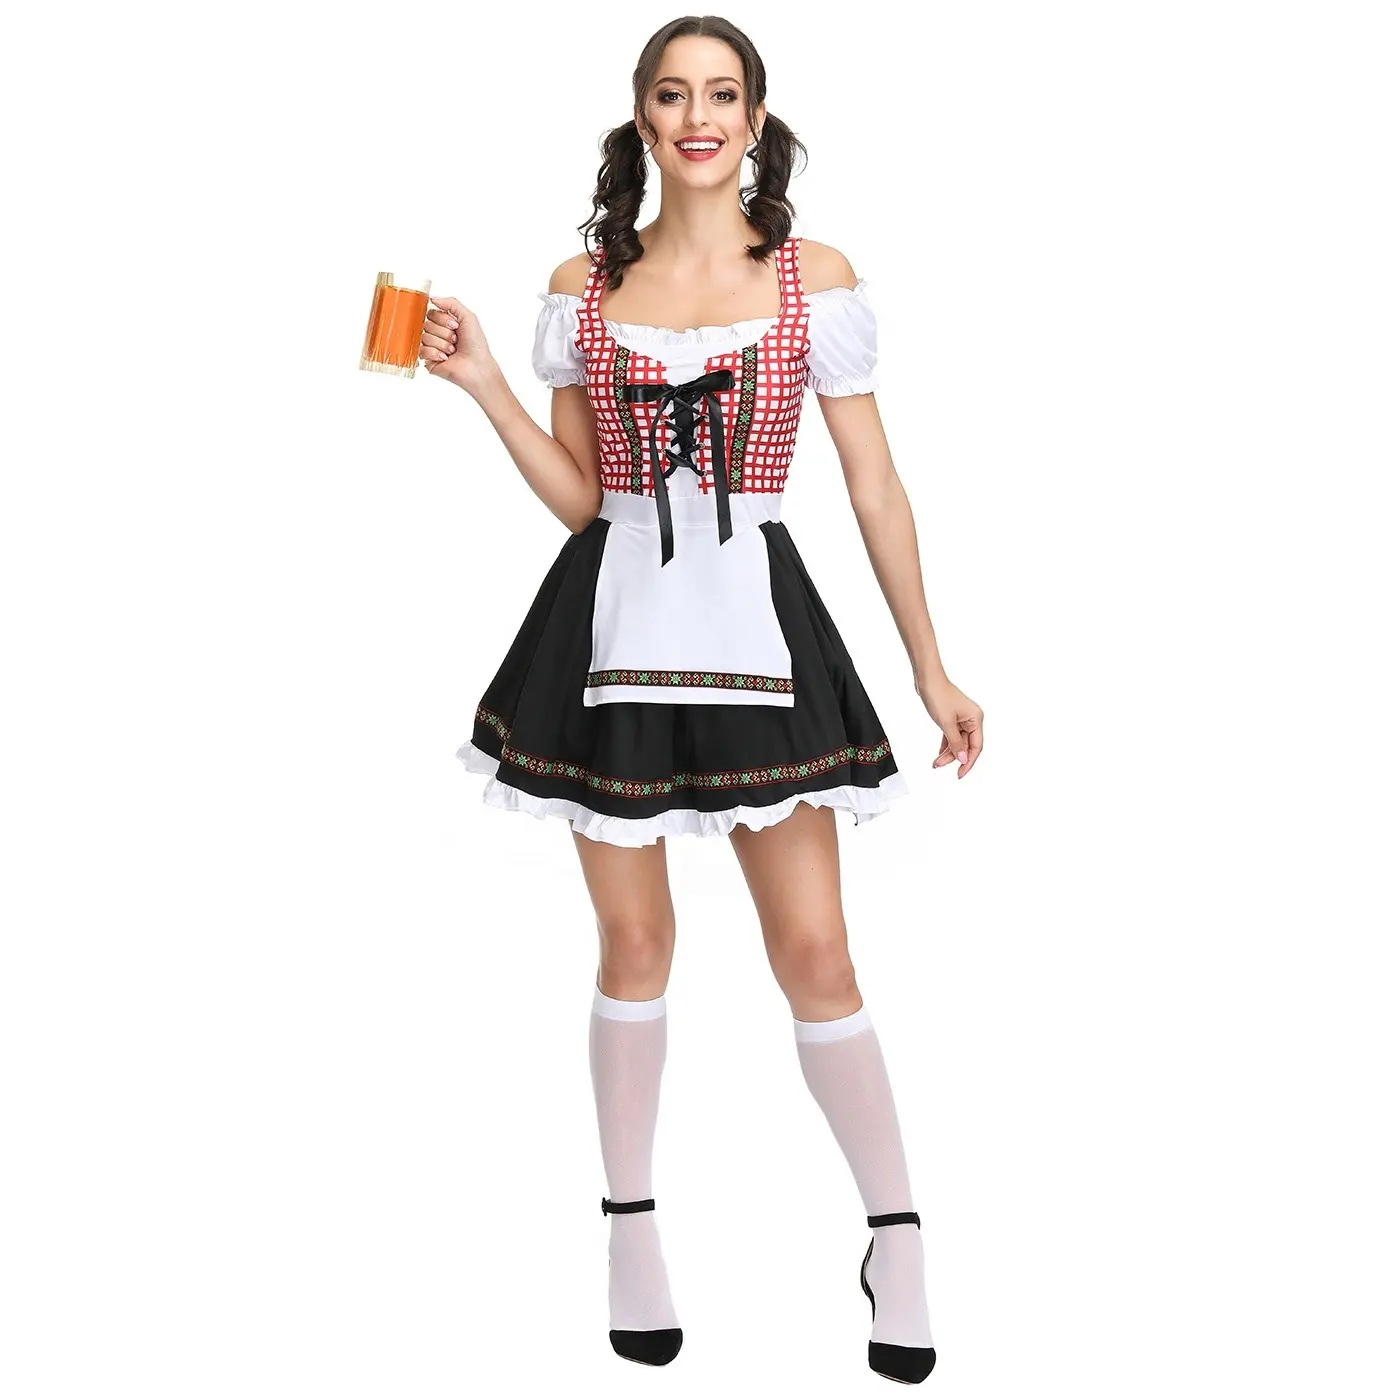 Damen Erwachsene Oktoberfest Dirndl Kleid bayerisch Heidi Bier Mädchenkostüm Dienstmädchenkostüm Cosplay Halloween ausgefallenes Party-Kleid